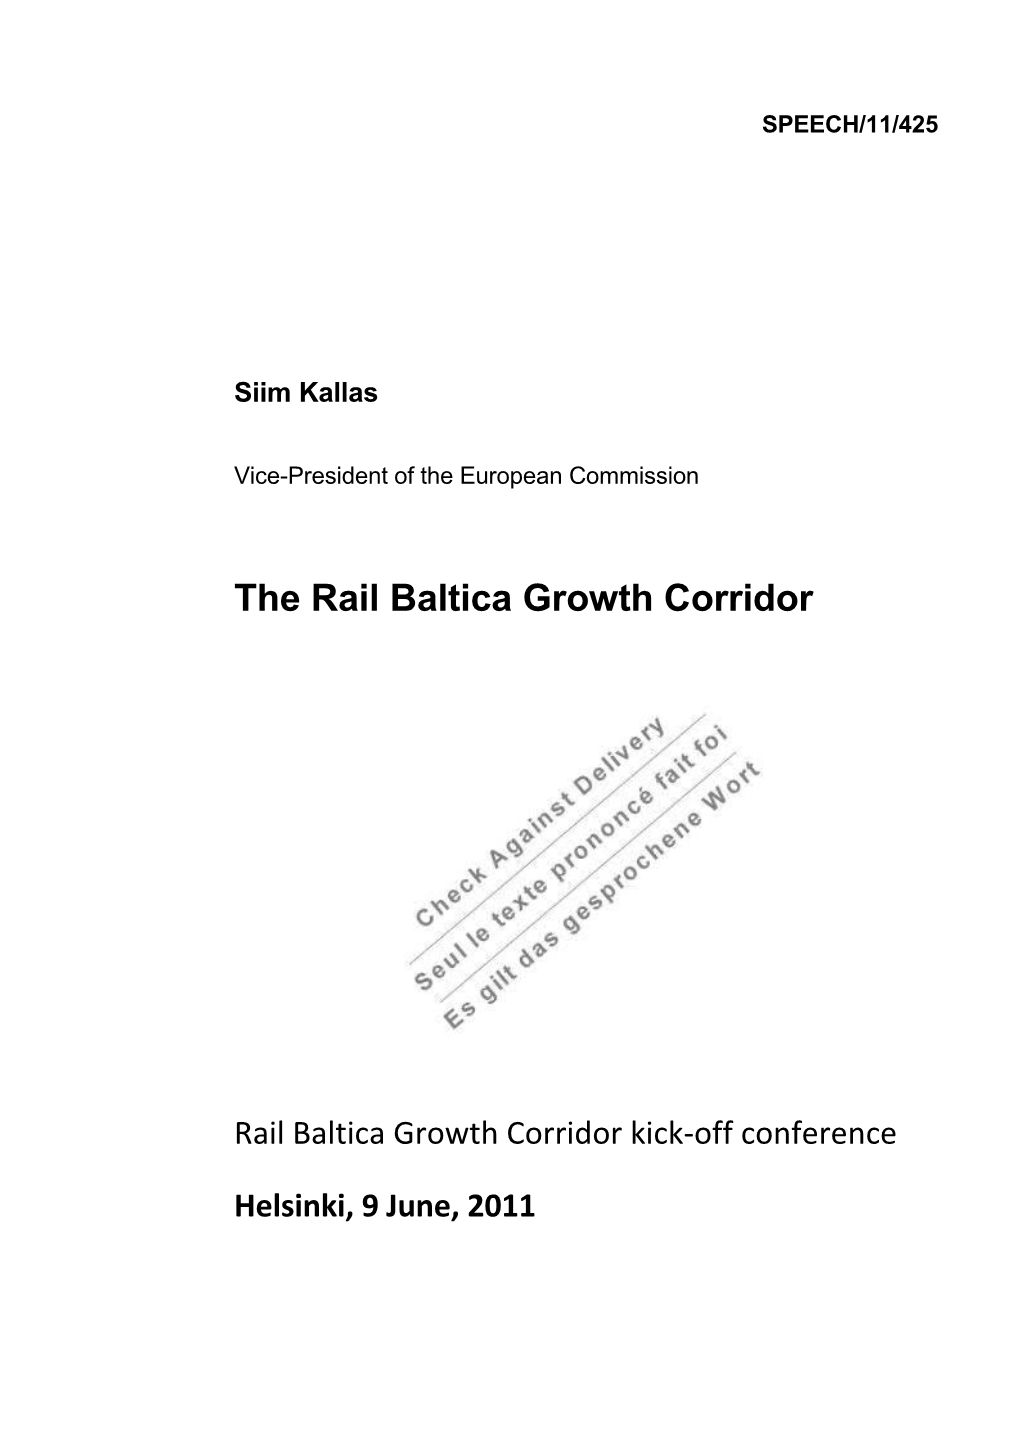 The Rail Baltica Growth Corridor